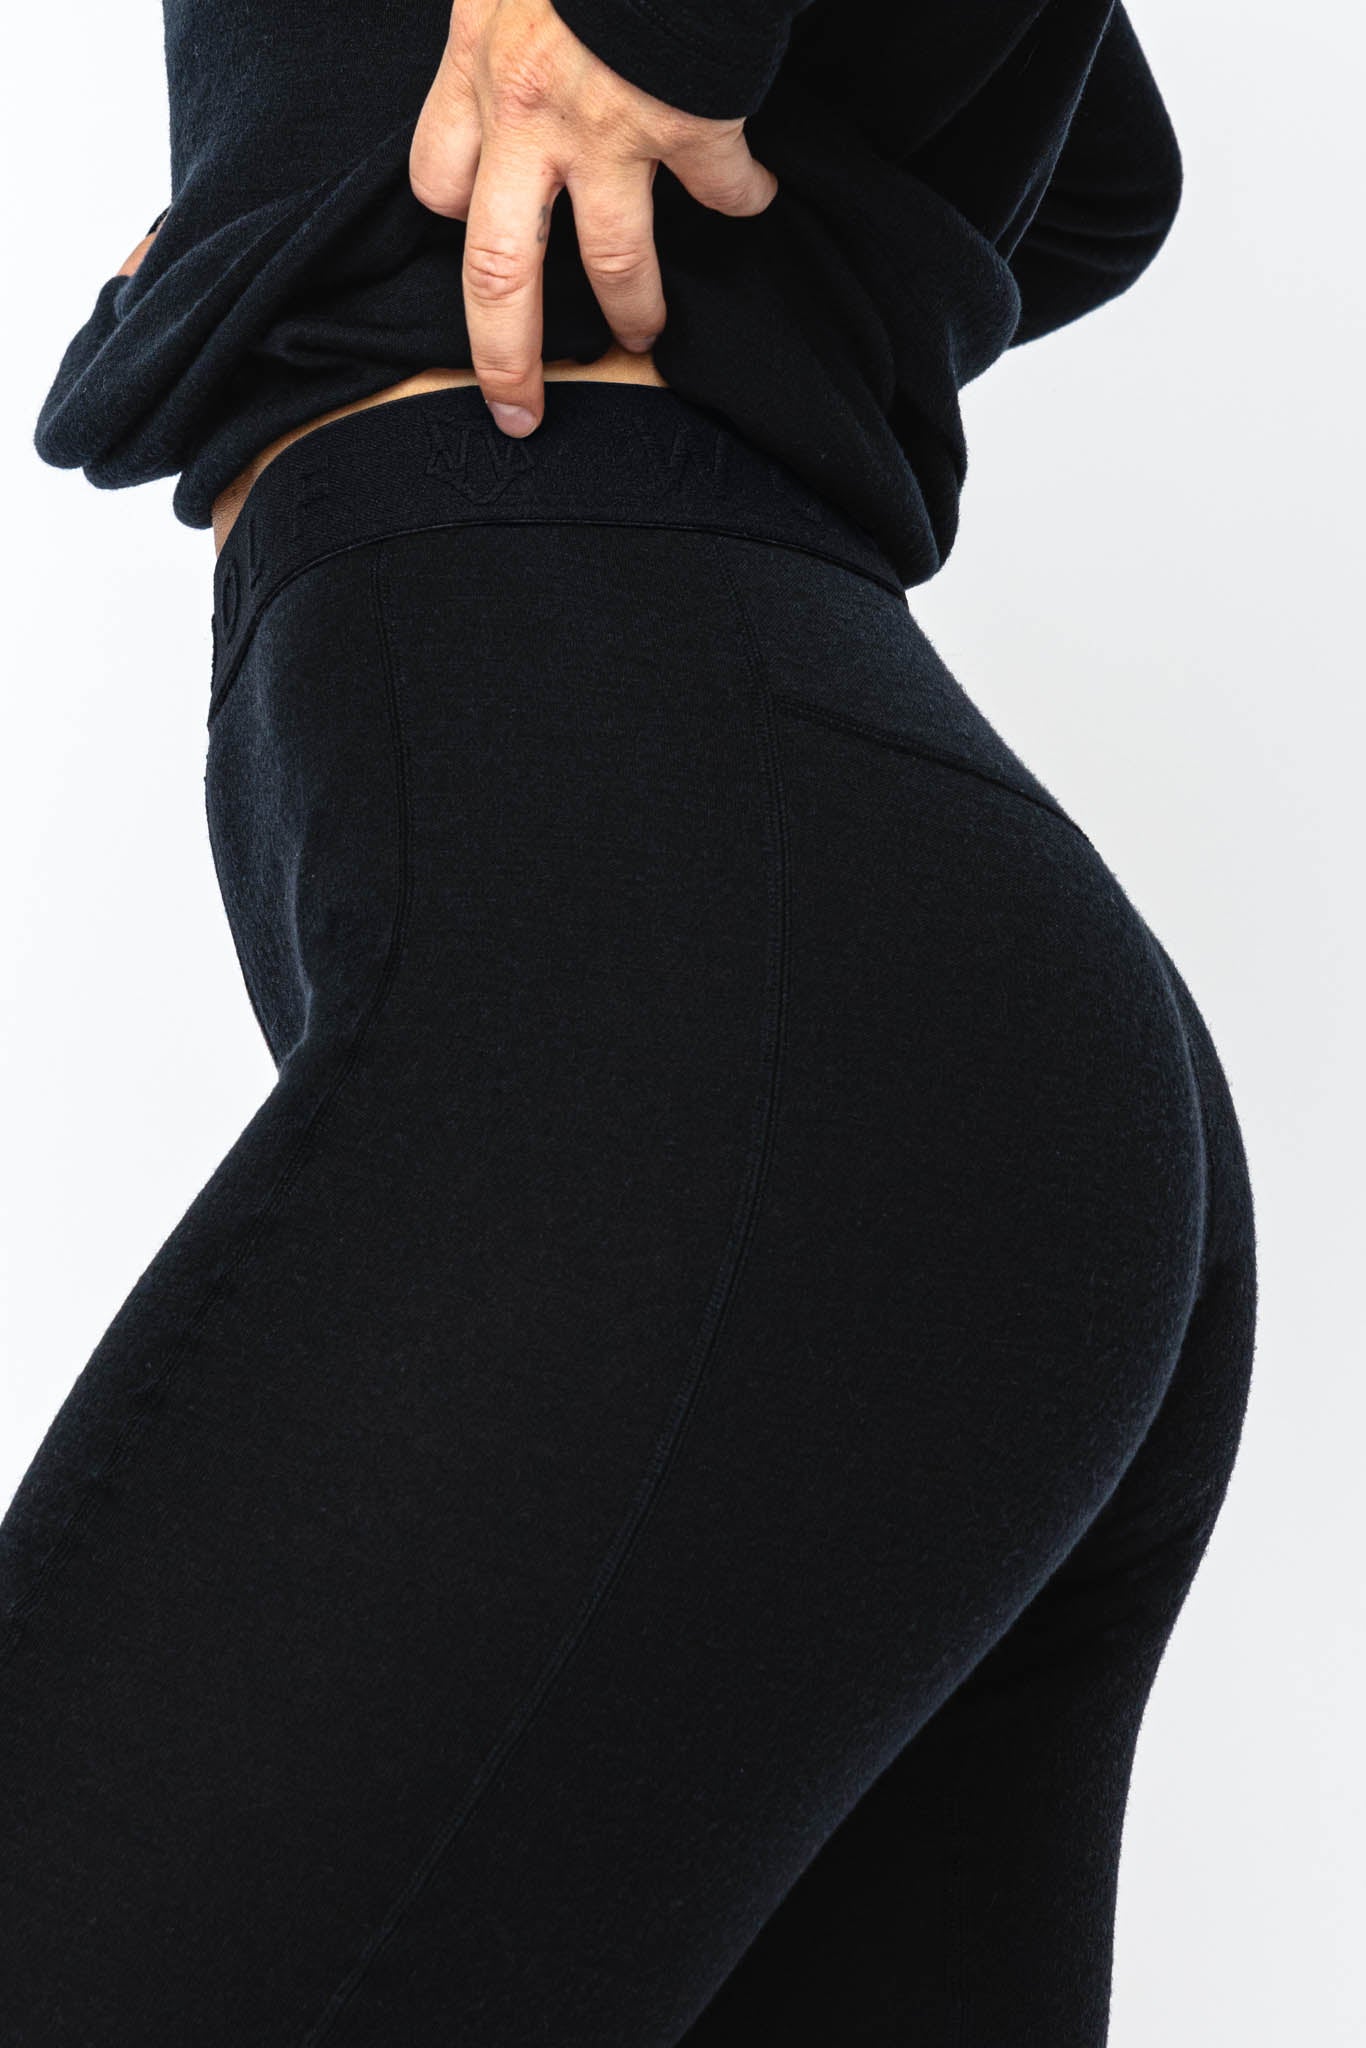 DSG Outerwear Women's Merino Wool Blend Base Layer Pants - 721373